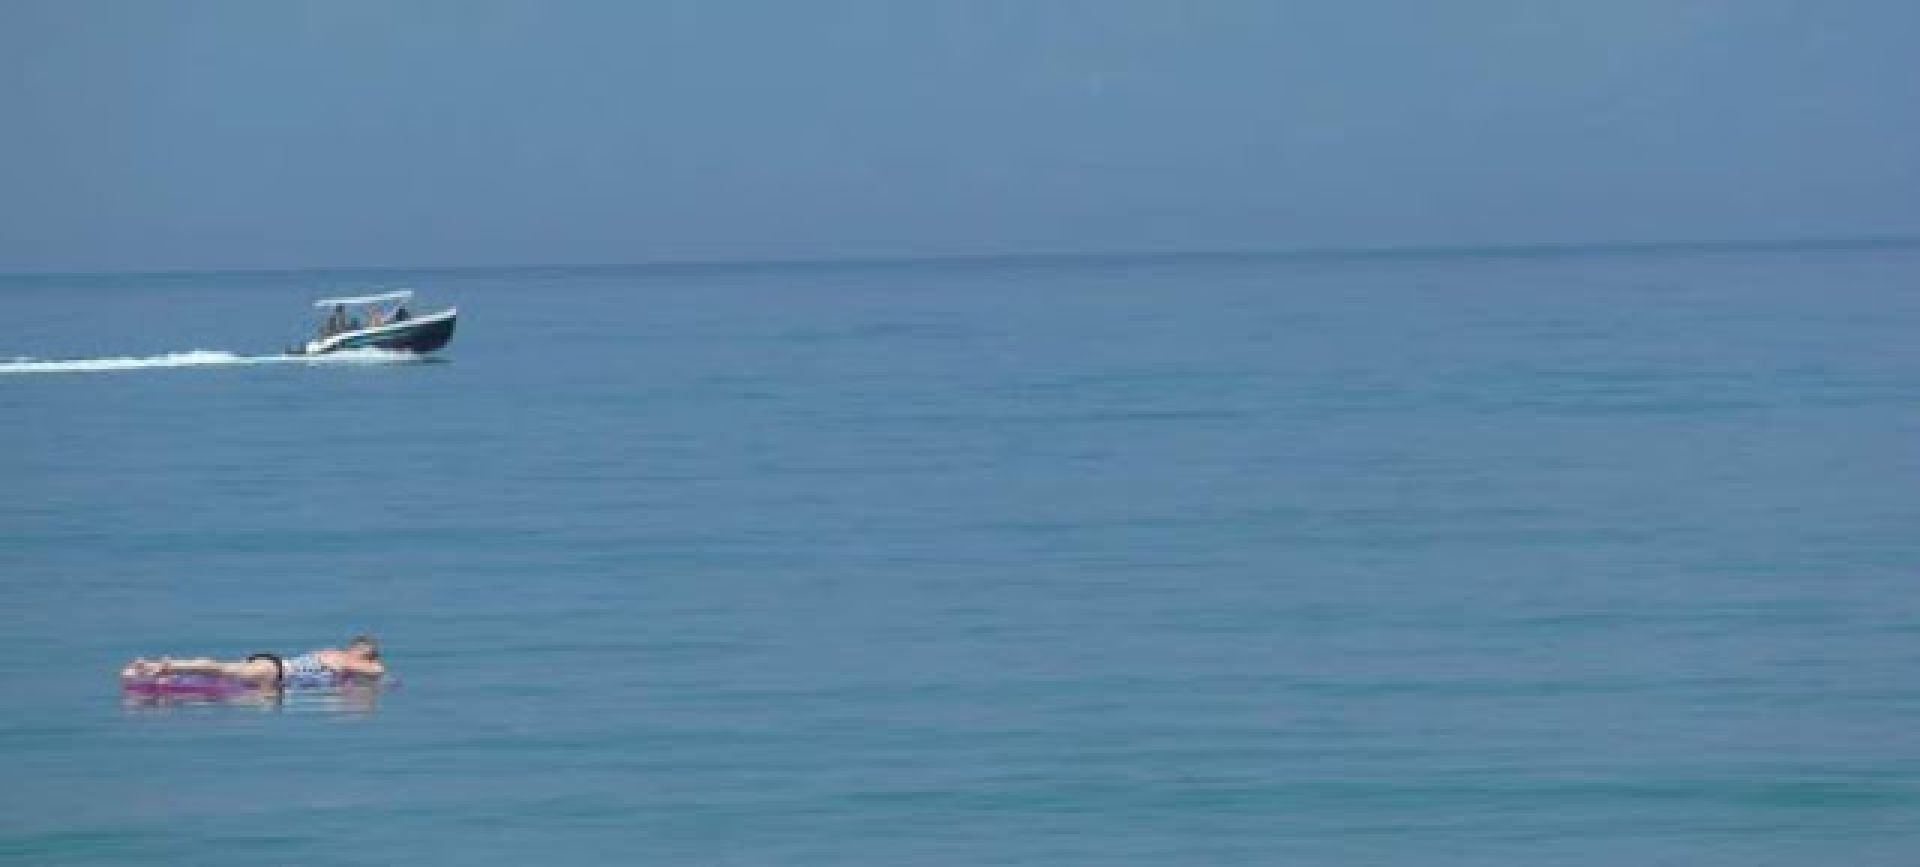 Νεαρός με στρώμα θαλάσσης κόντεψε να πνιγεί στην περιοχή της Αρτέμιδας